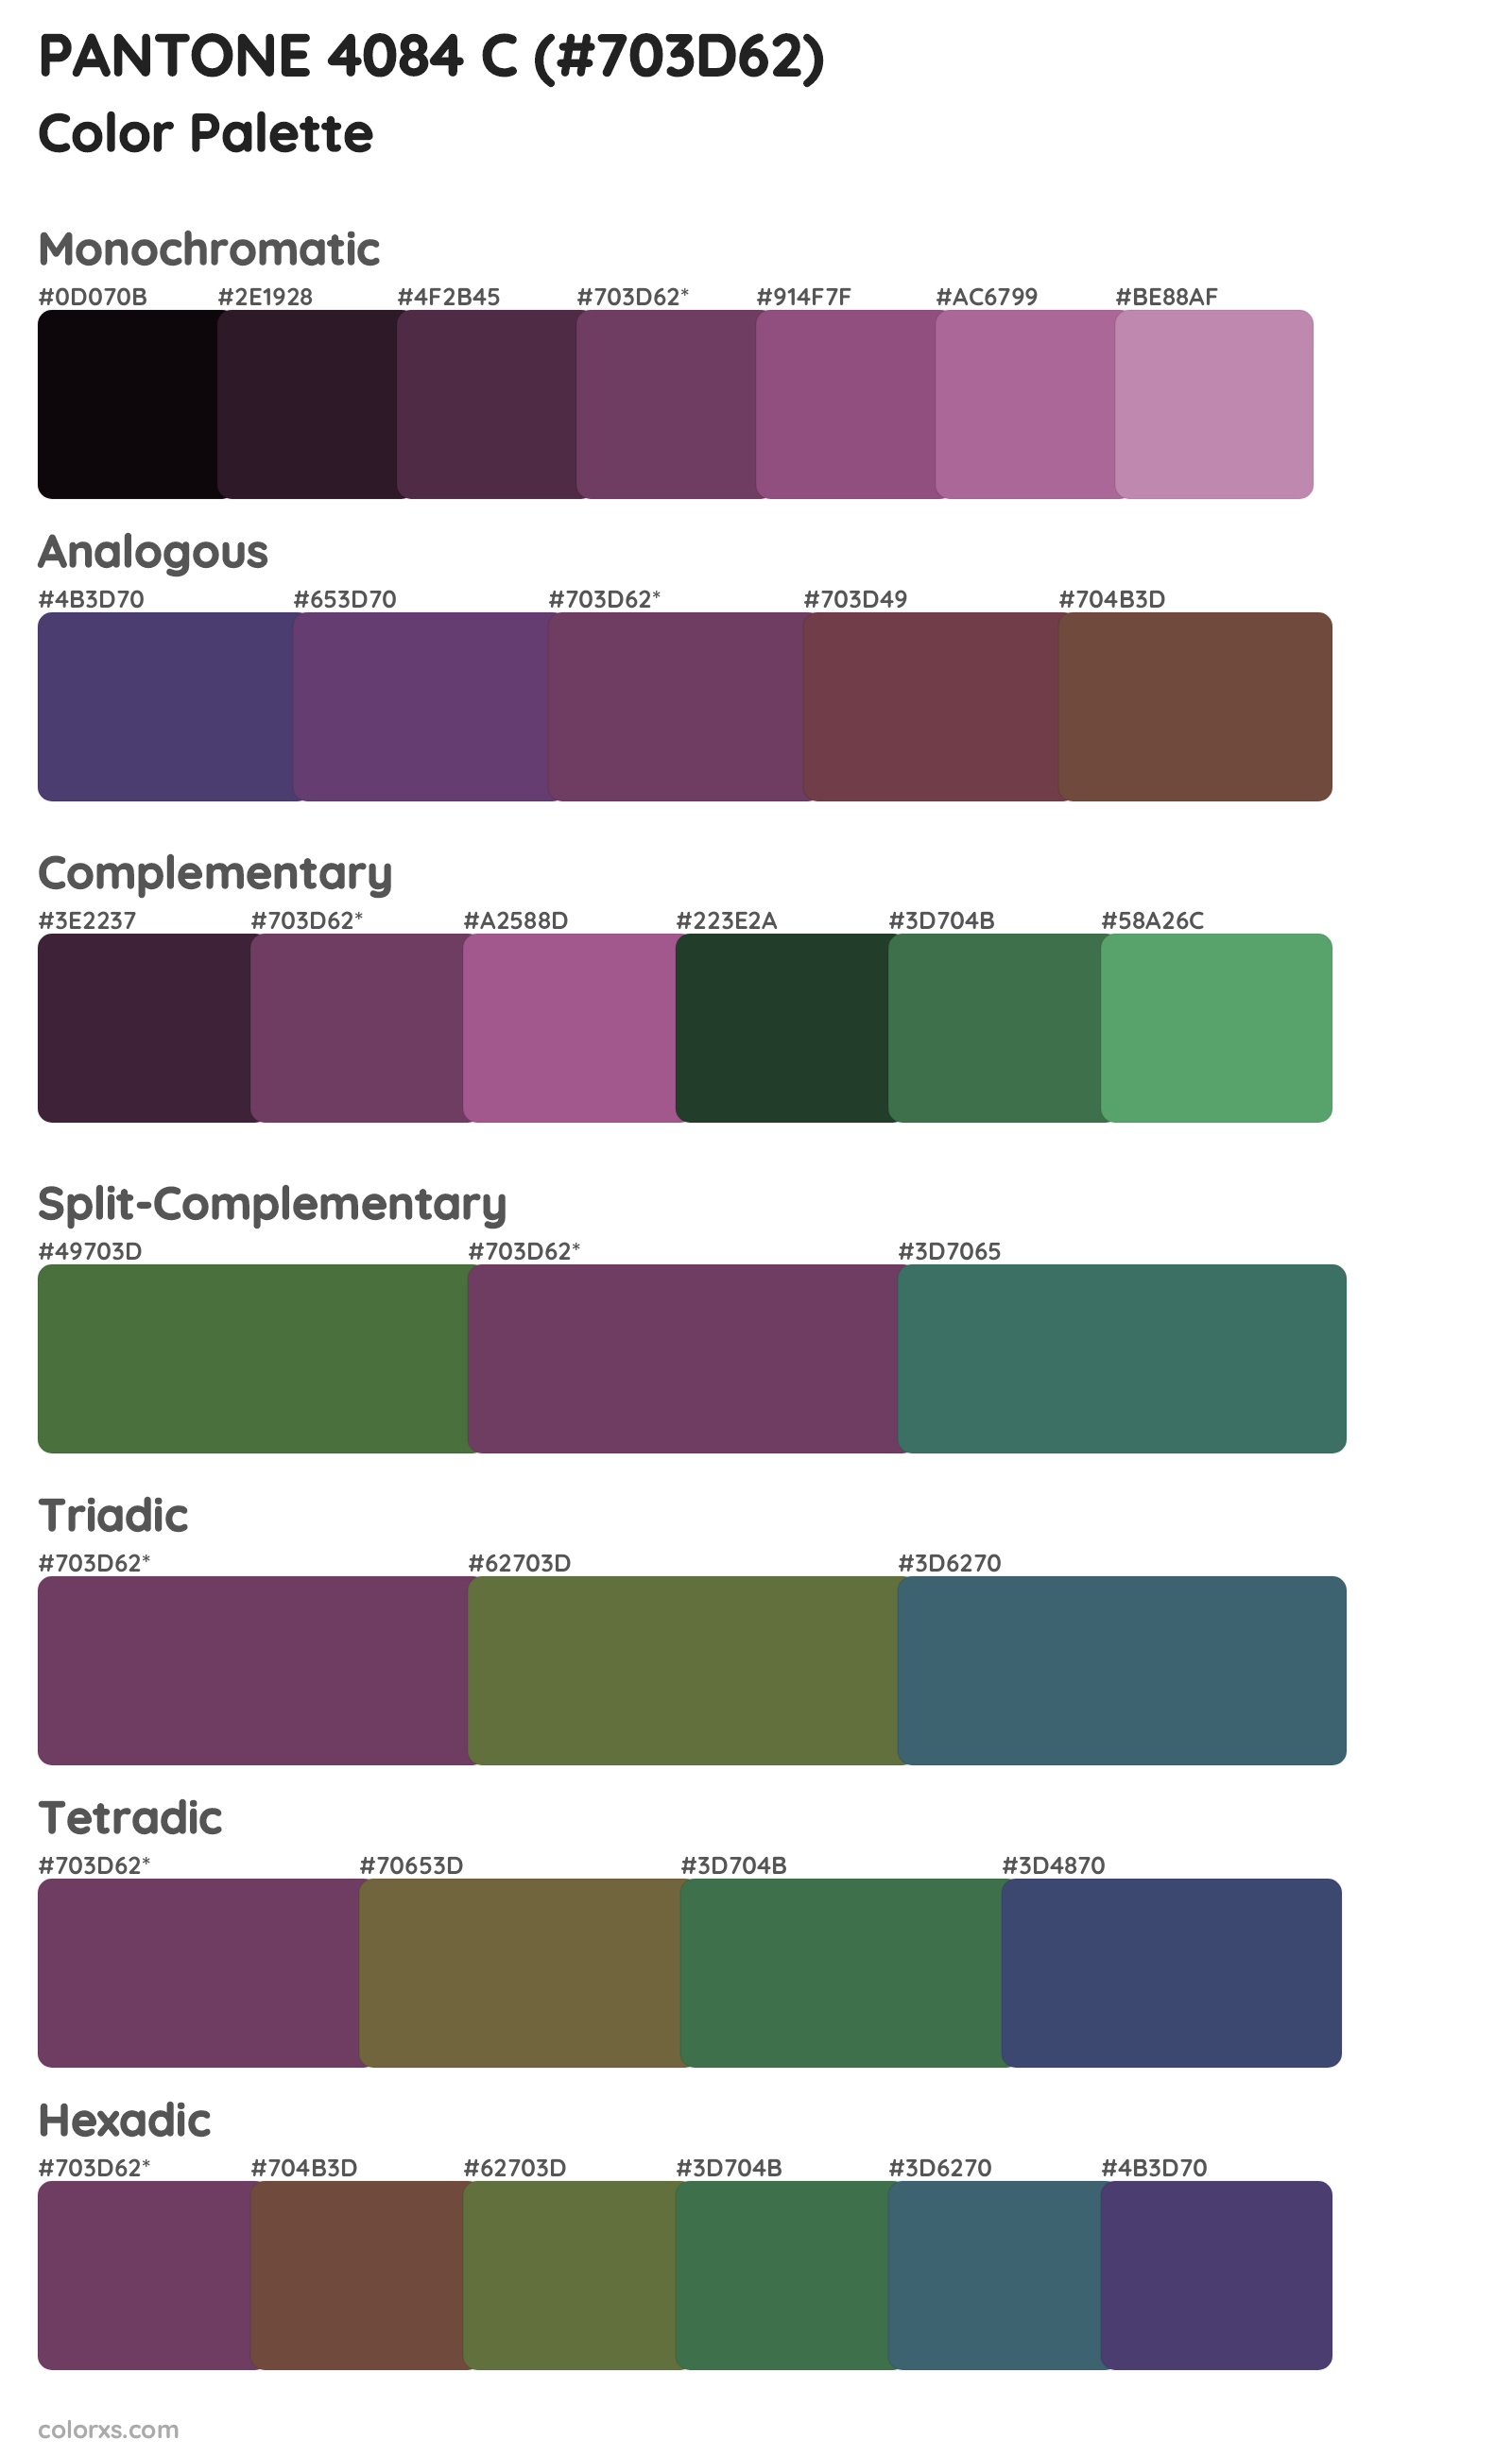 PANTONE 4084 C Color Scheme Palettes